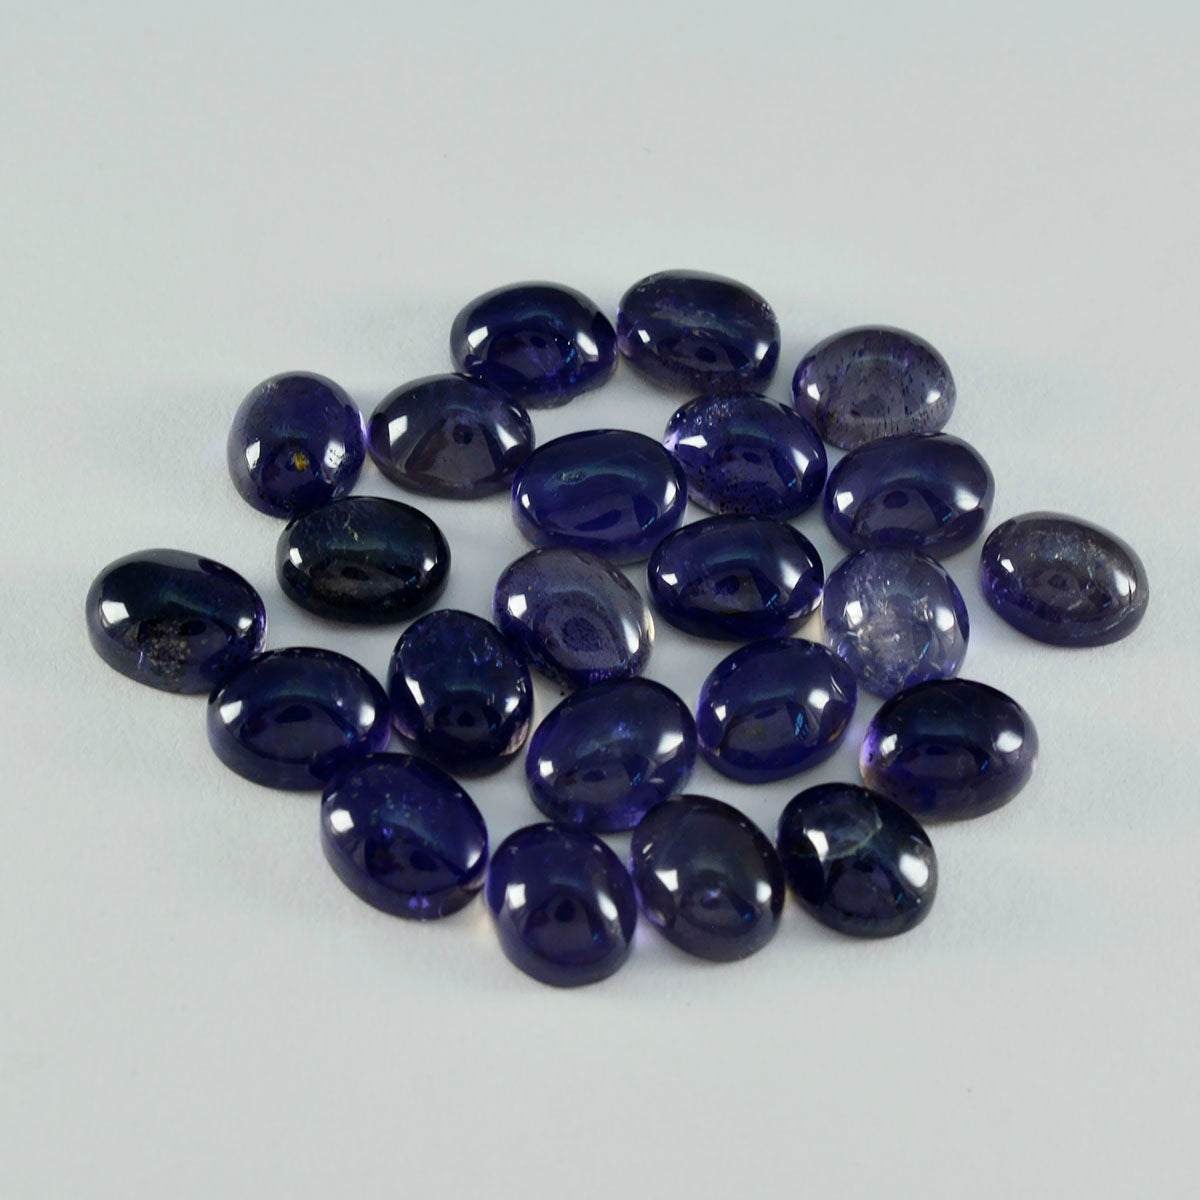 Riyogems 1 pc cabochon iolite bleu 9x11 mm forme ovale belle qualité pierres précieuses en vrac